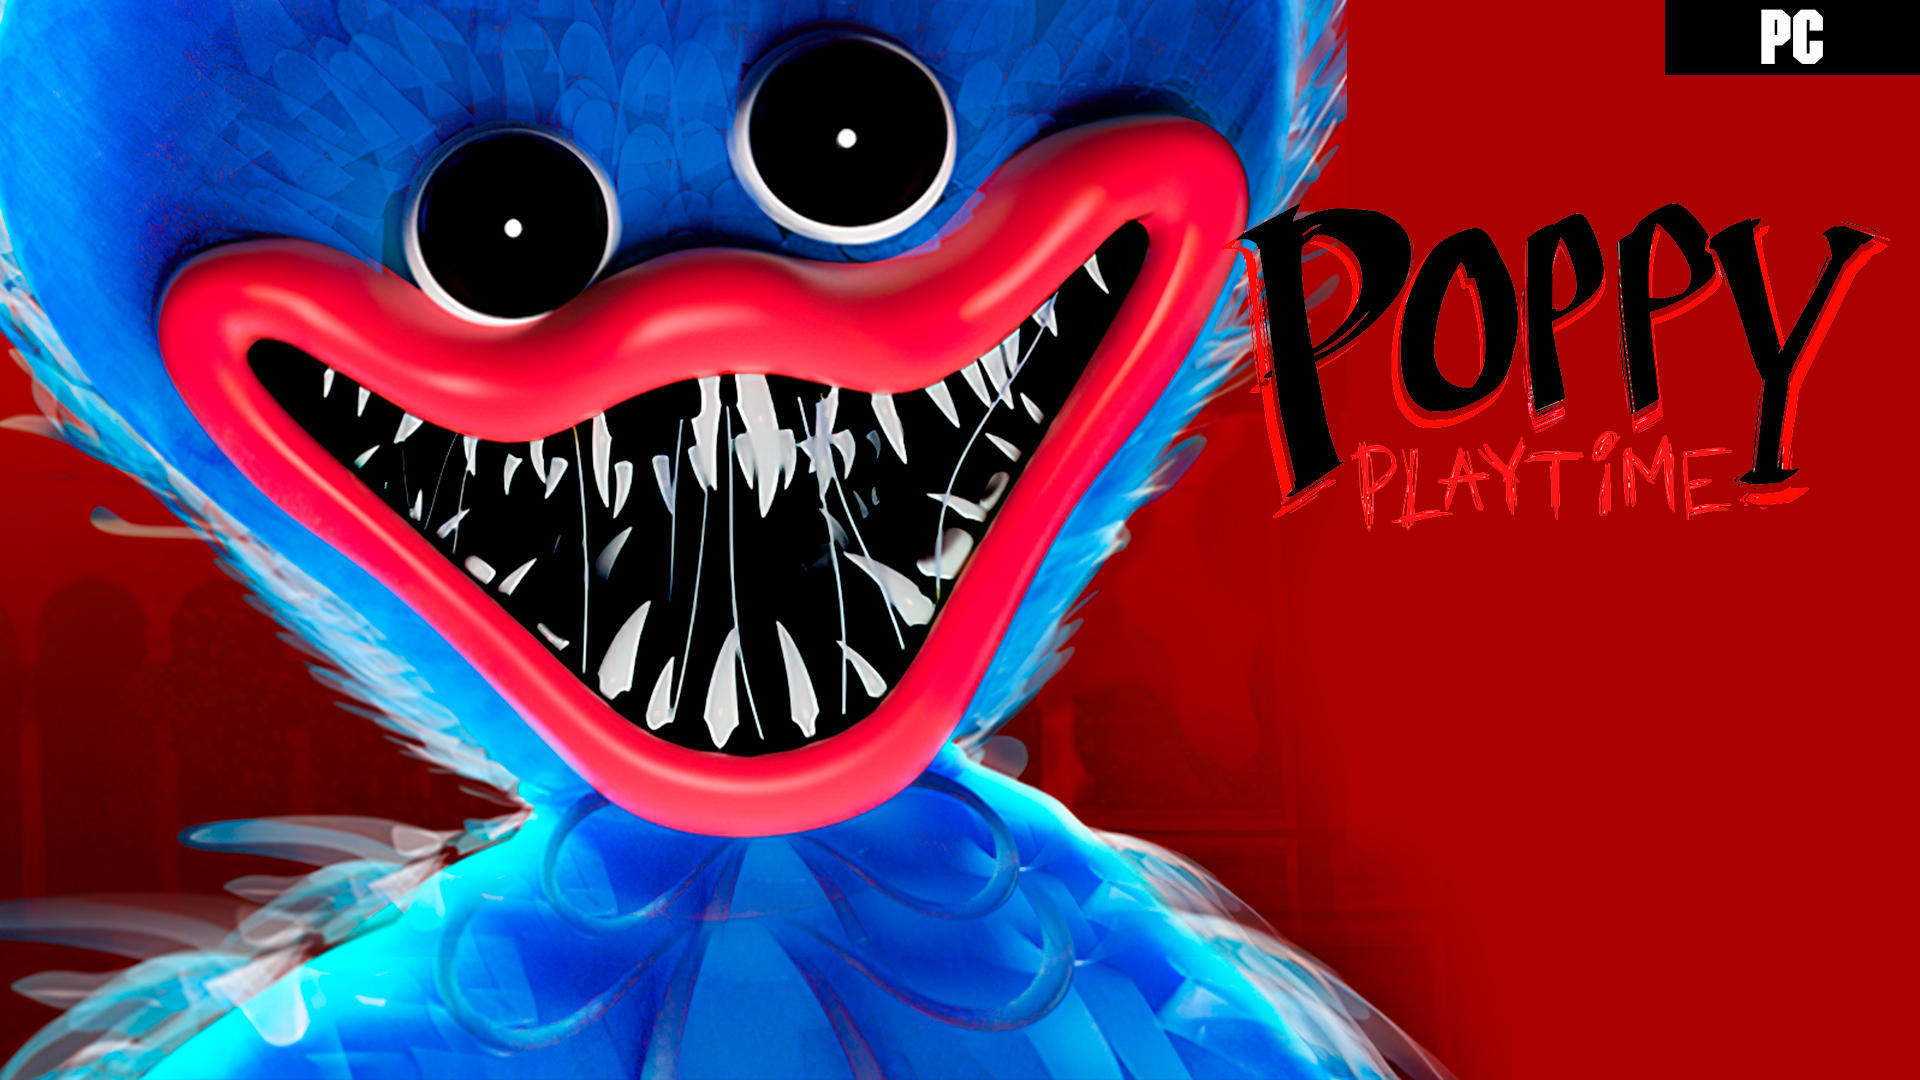 Impresiones Poppy Playtime: Chapter 2, más juguetes y terror